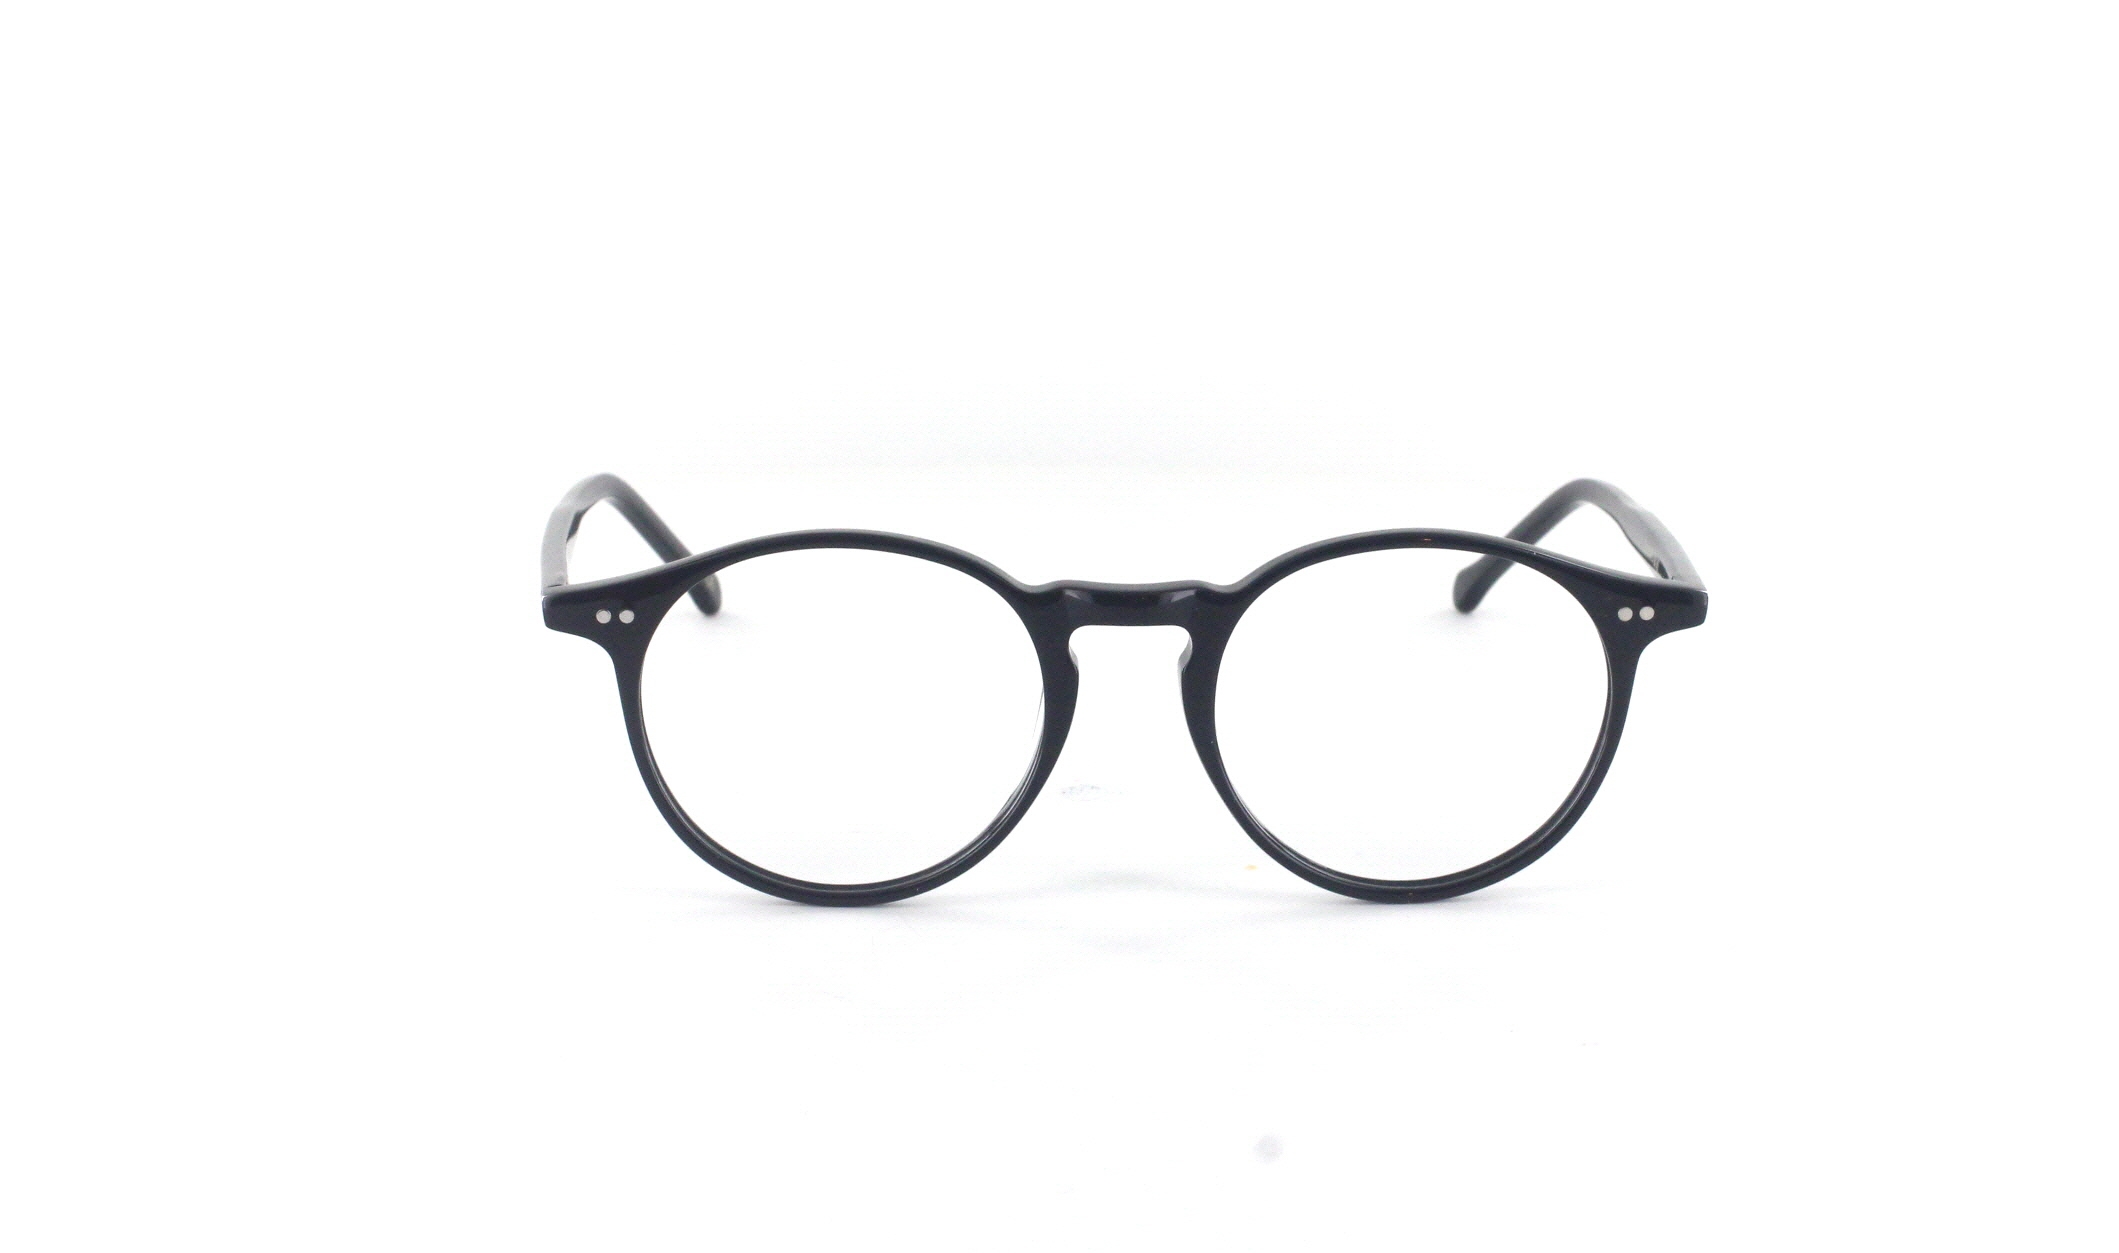 Classic No1 Brille für herzförmige Gesichter exklusiv bei Briloro kaufen!